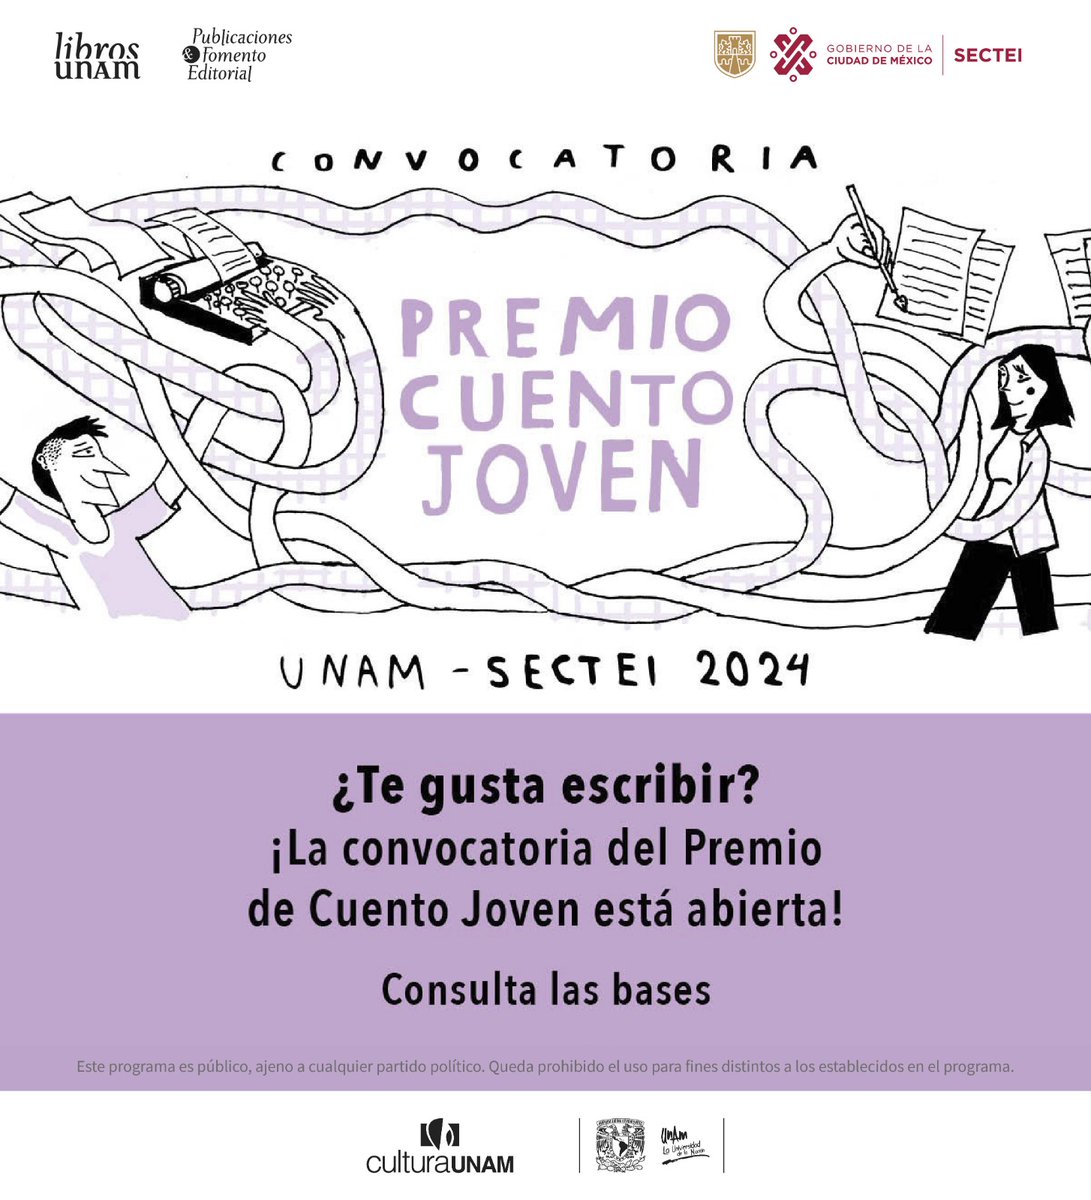 ✨ ¡Esta es la oportunidad de publicar tus relatos! Te invitamos a participar en la convocatoria Premio de Cuento Joven #UNAM-#SECTEI 2024. 🖊️ 🗓️ Fecha límite: 14 de junio. Bases y requisitos👇 libros.unam.mx/convocatoriaPr… @puic_unam @UNAM_MX